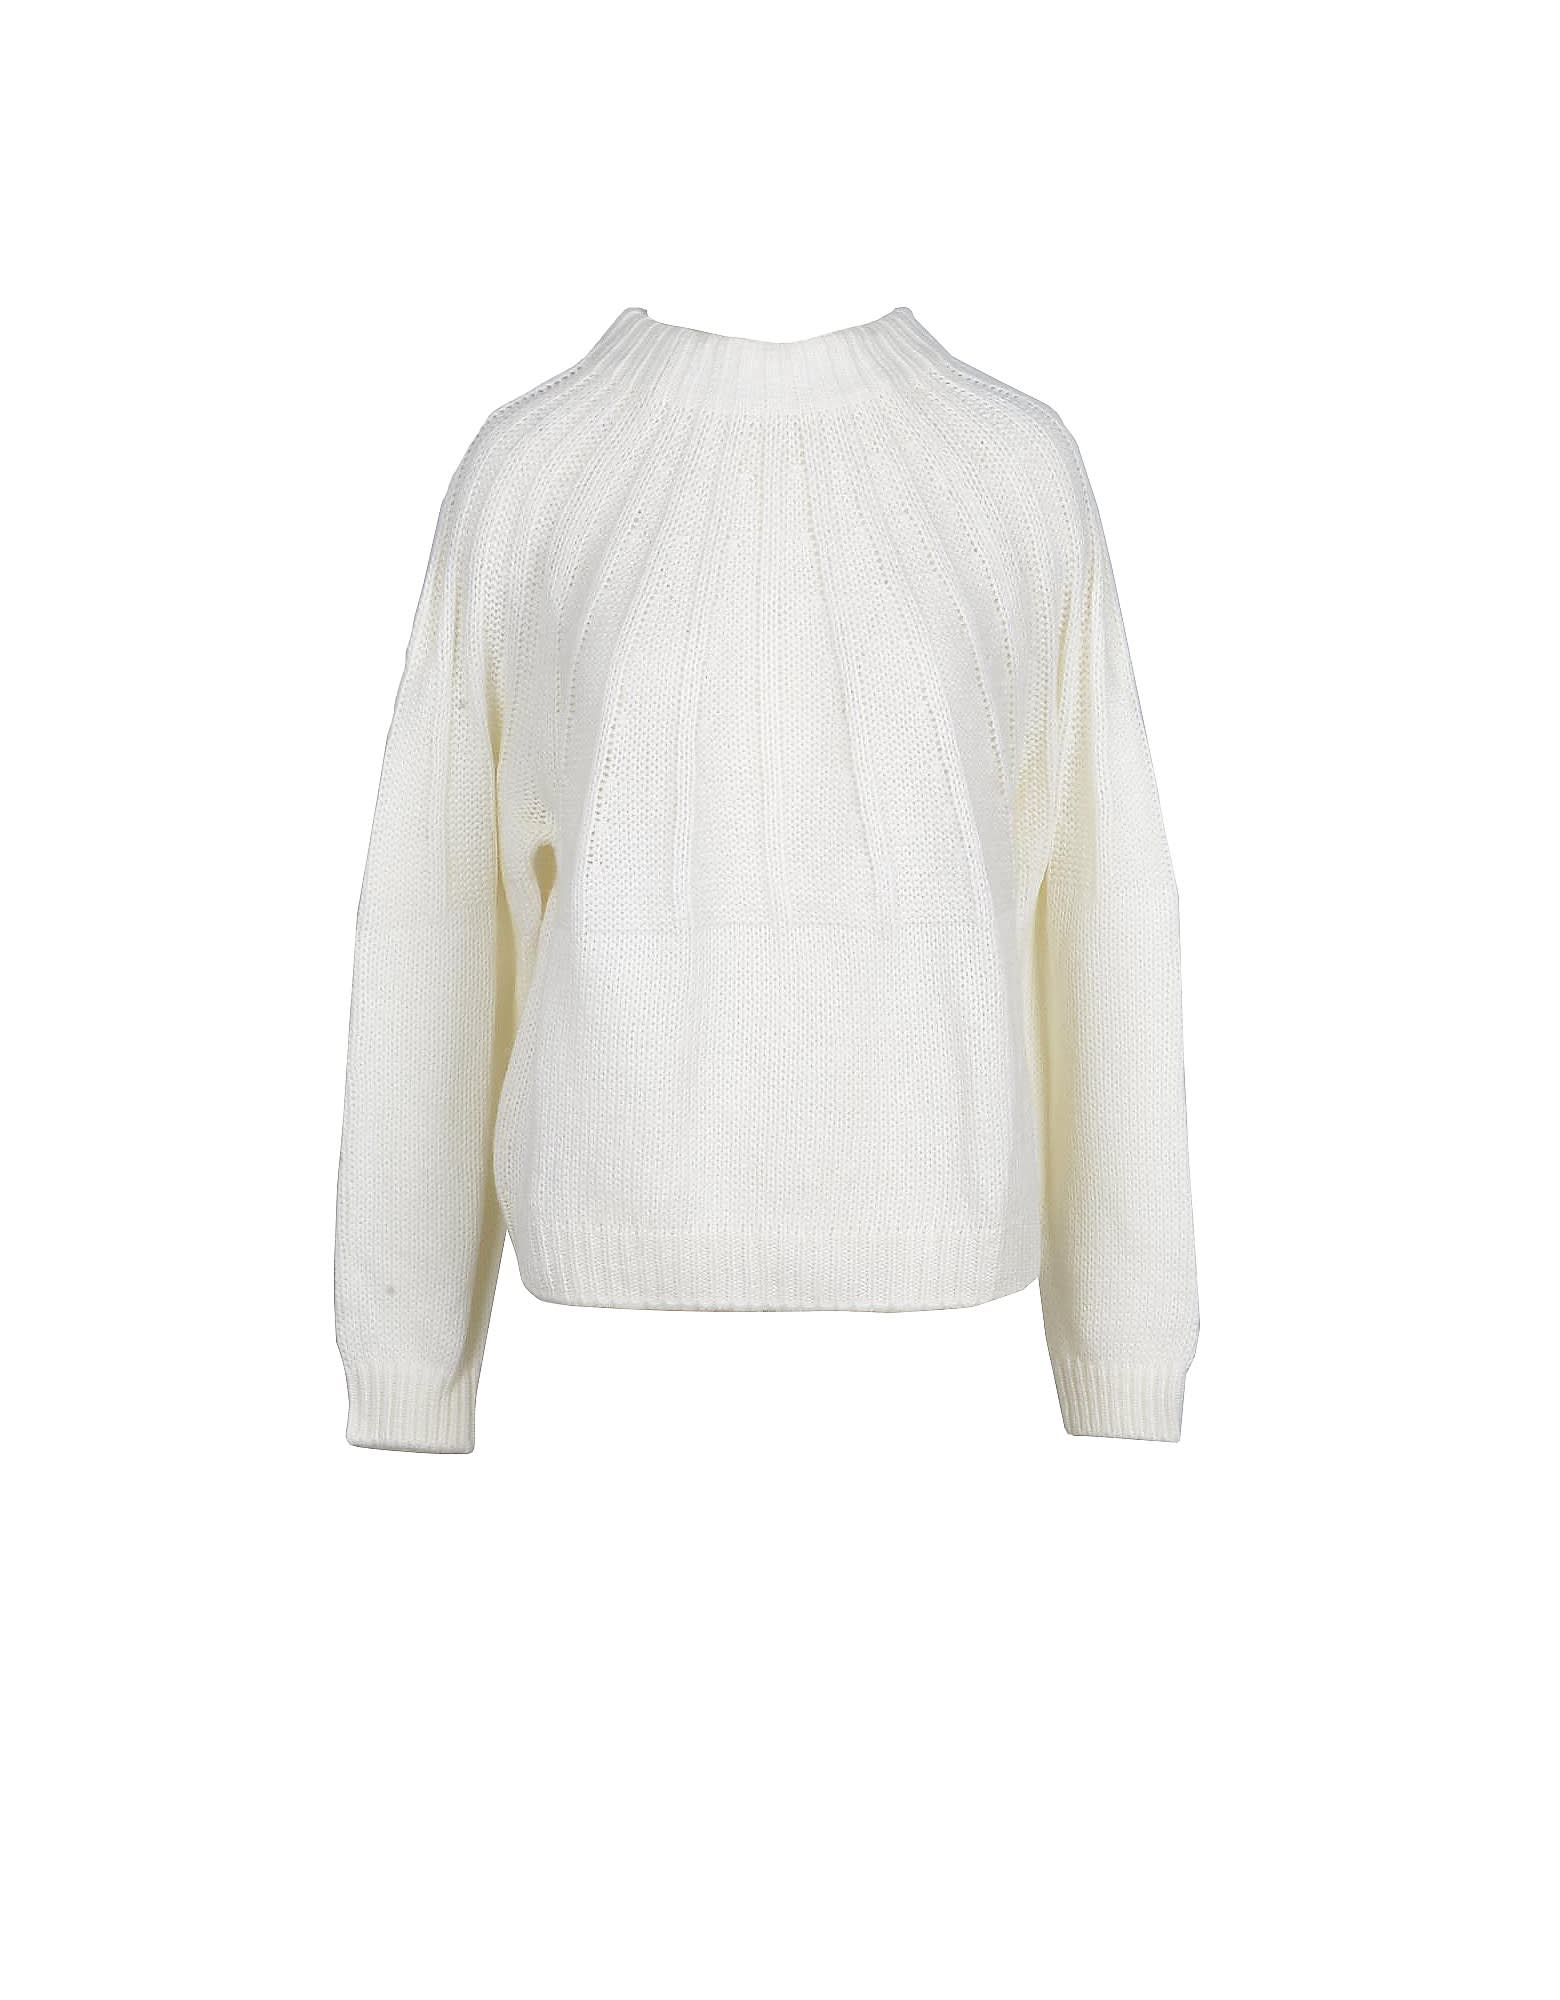 Max Mara Womens White Sweater